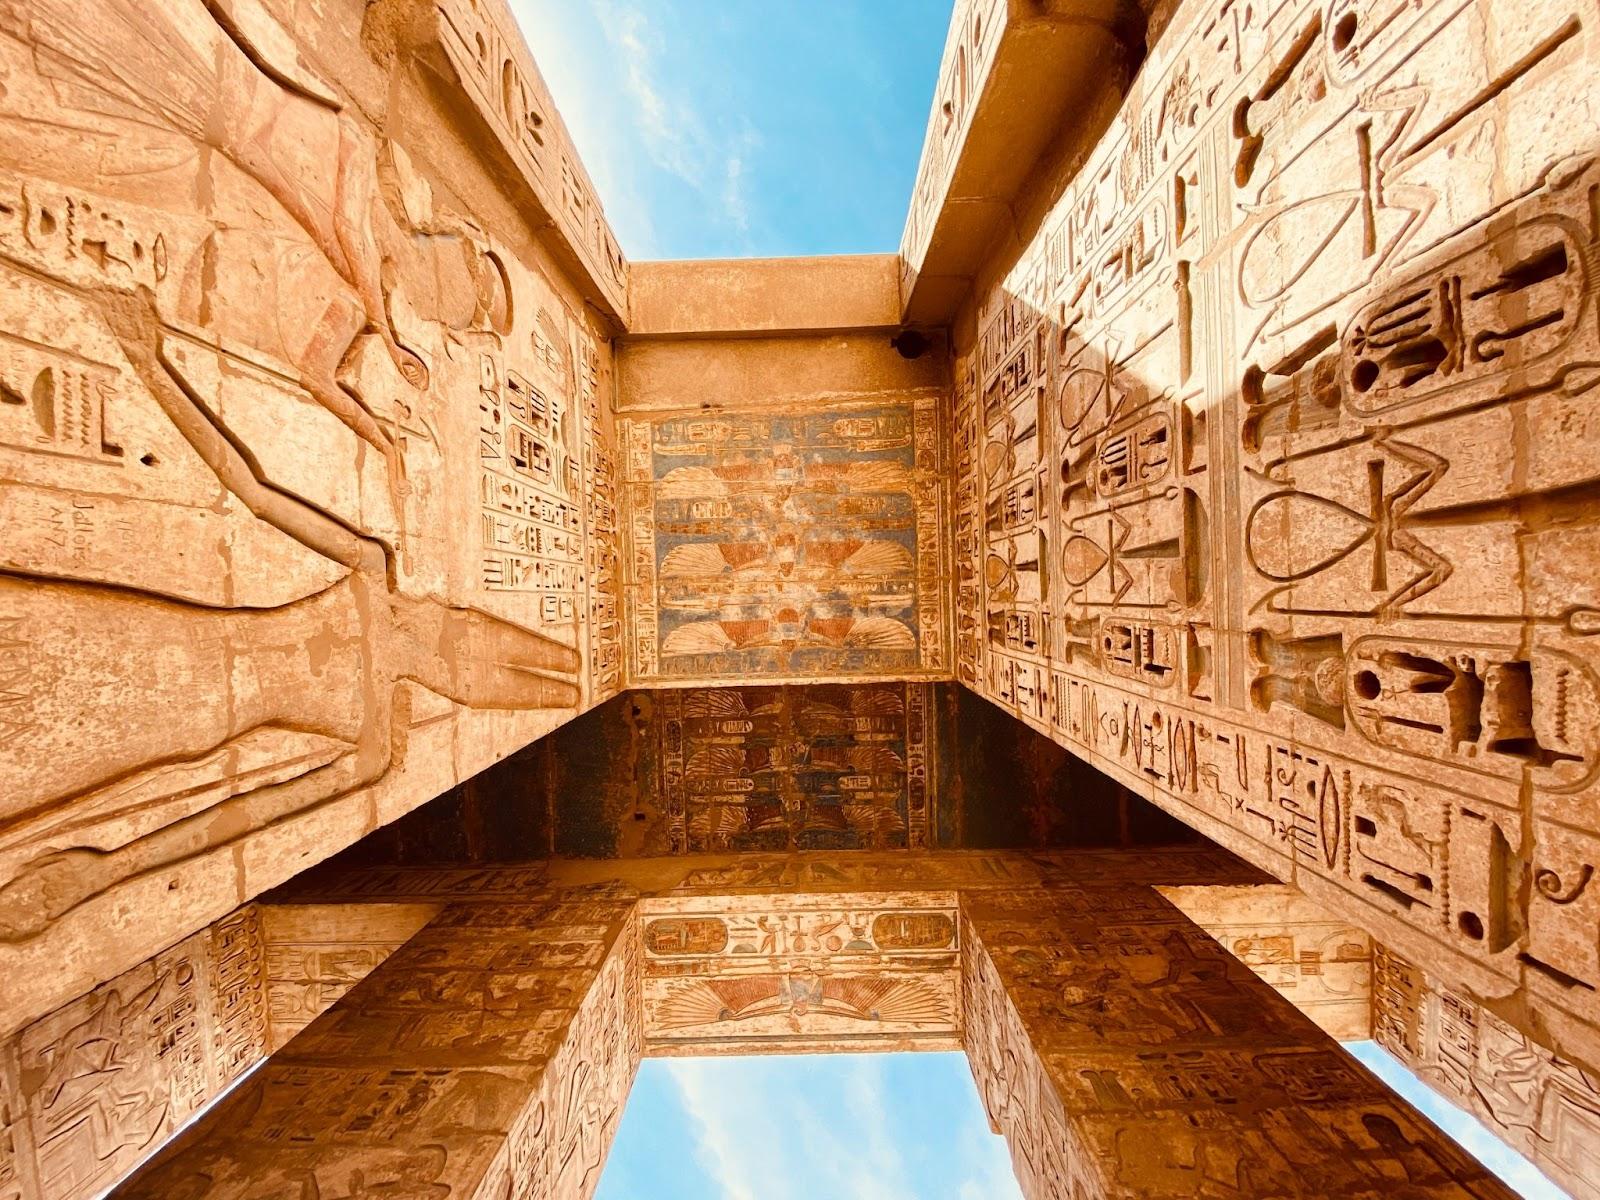 Theban Necropolis in Egypt